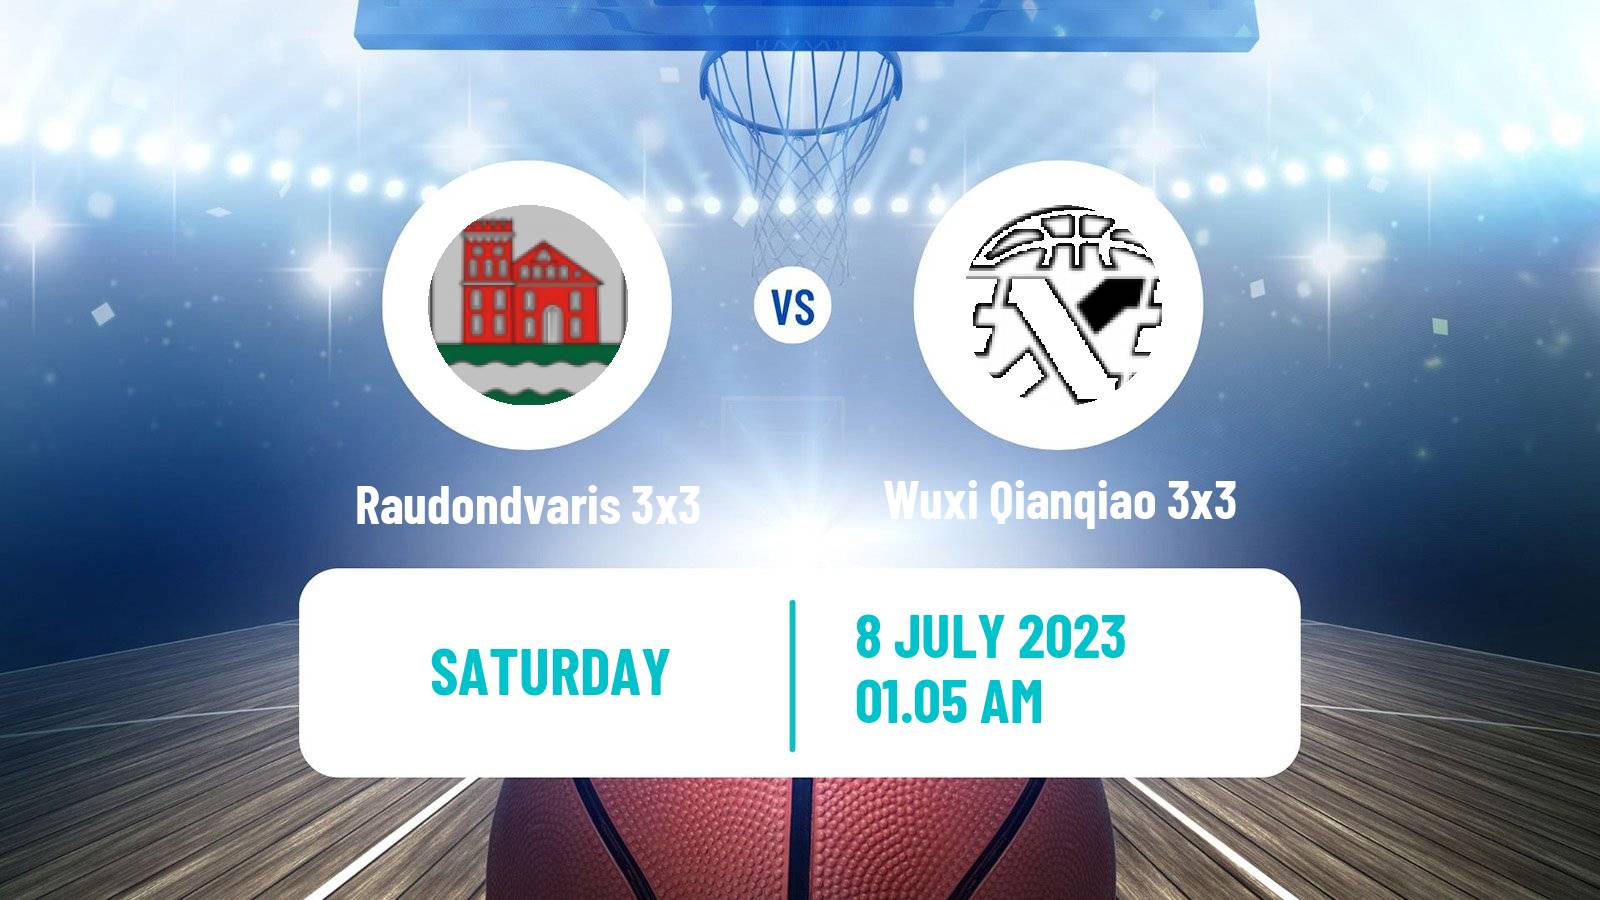 Basketball World Tour Macau 3x3 Raudondvaris 3x3 - Wuxi Qianqiao 3x3